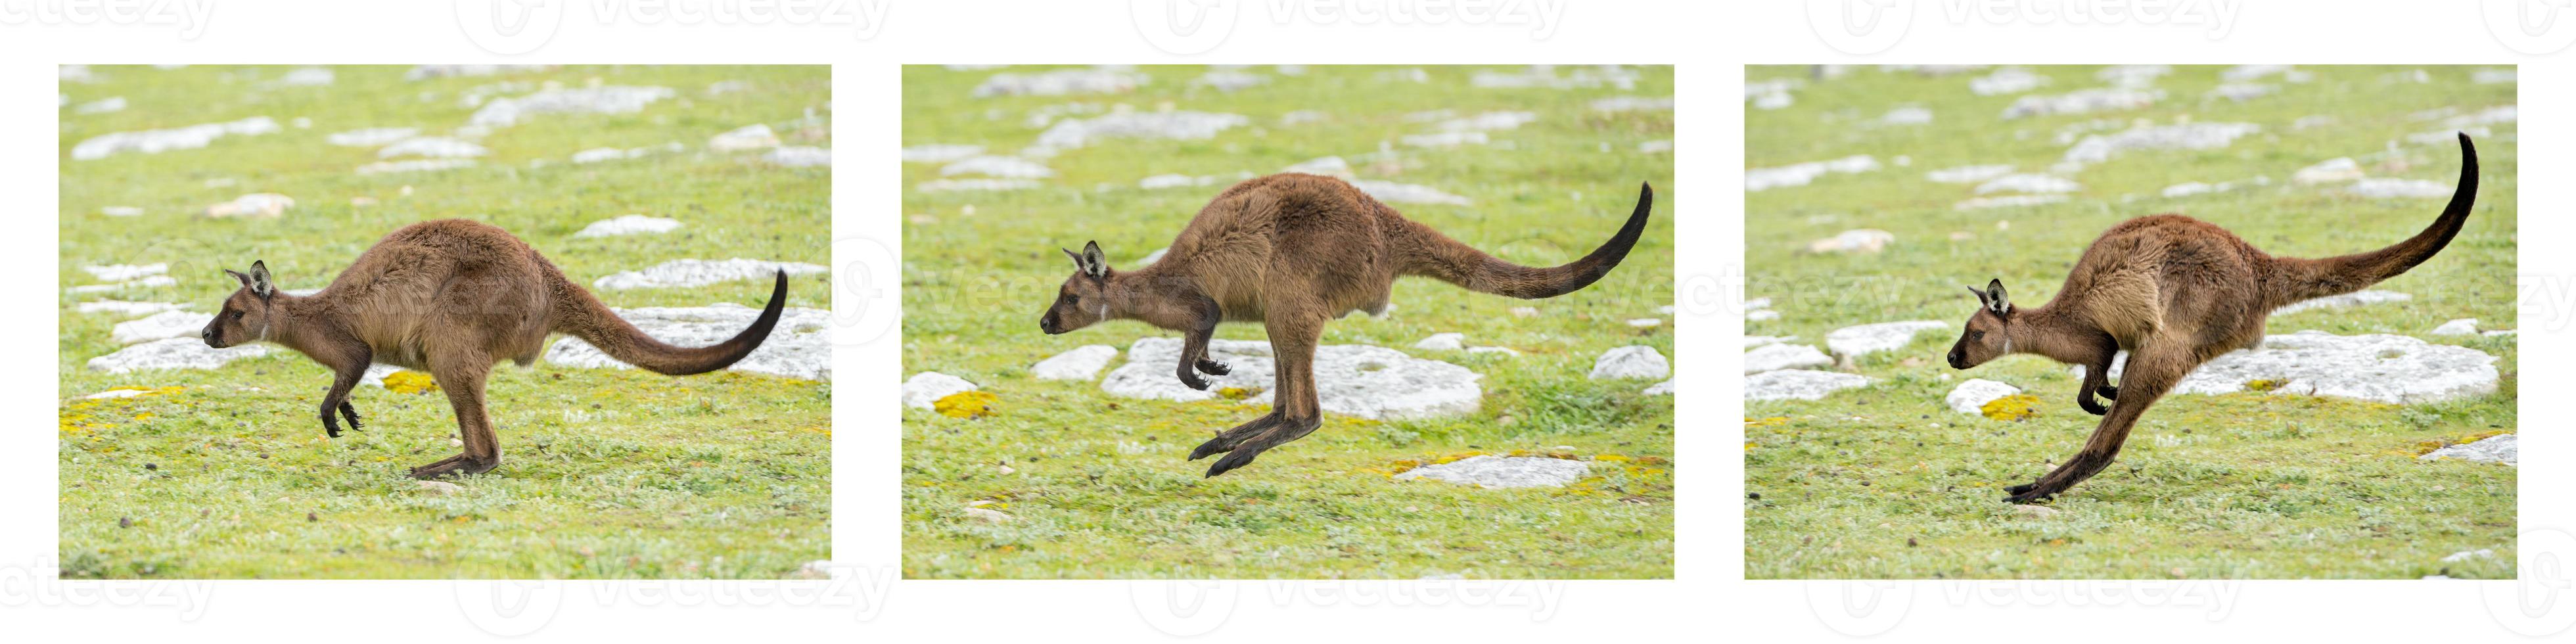 Känguru-Porträt beim Springen auf Gras foto